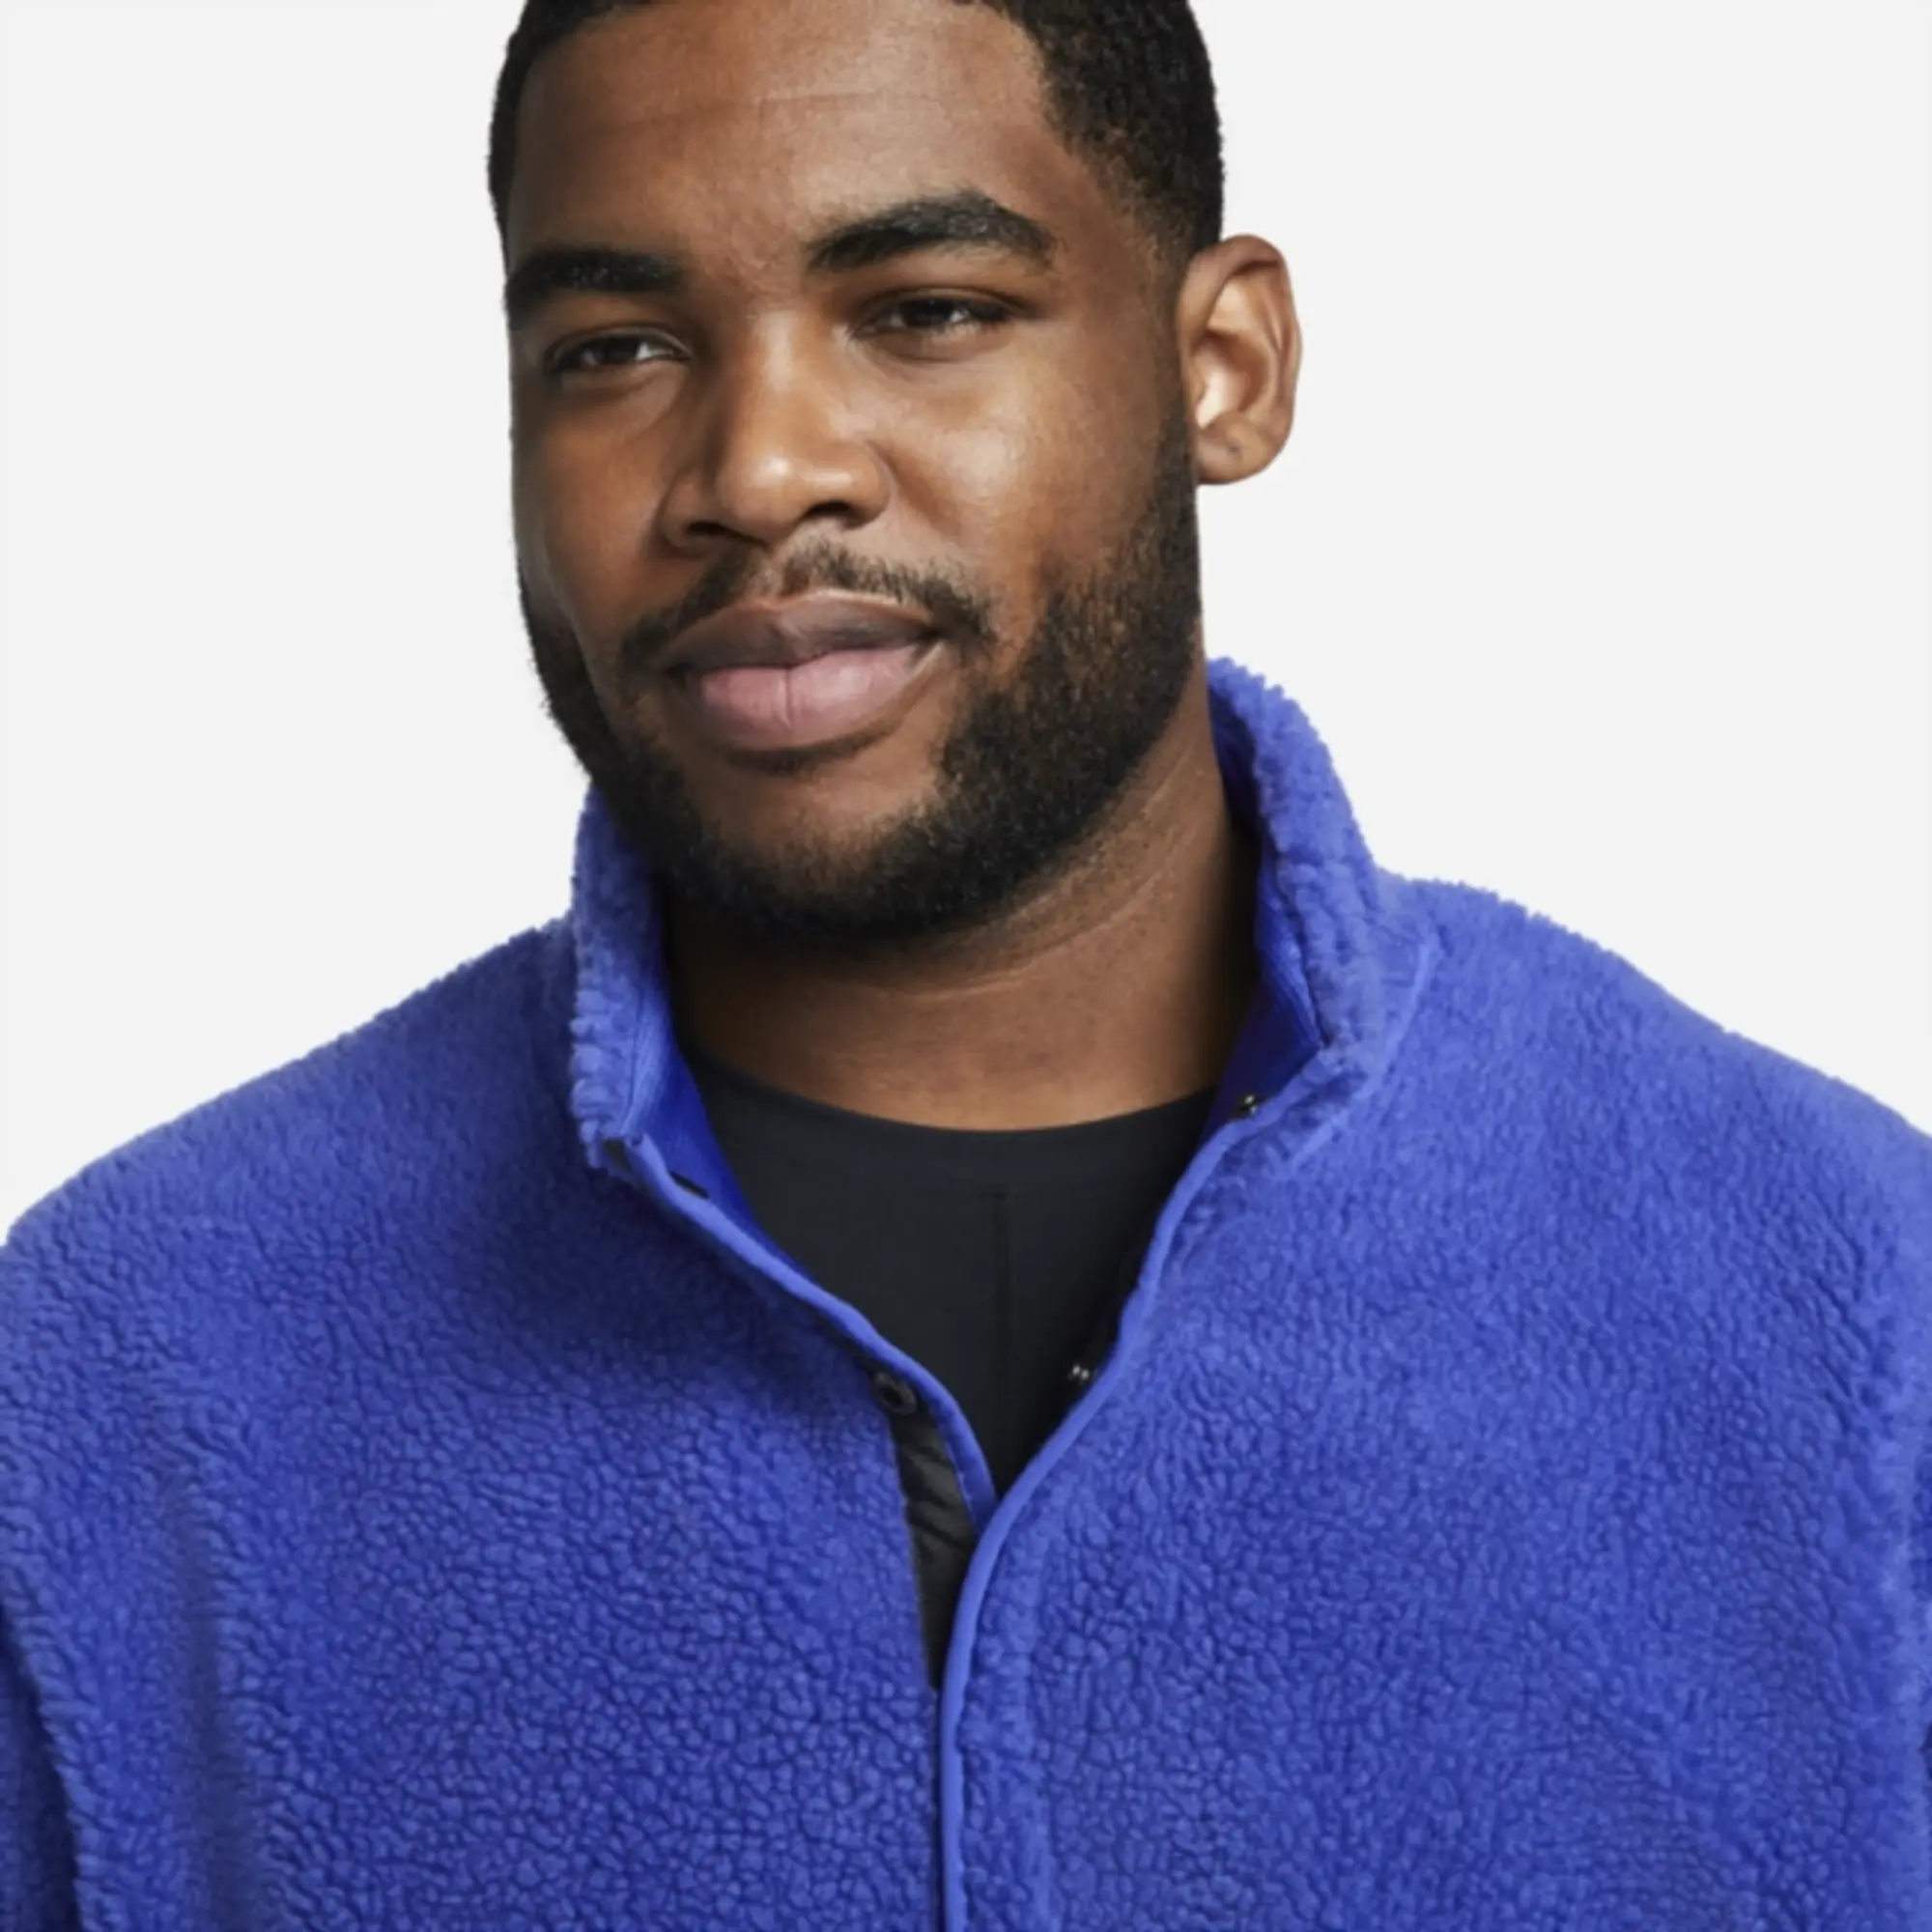 Nike Yoga Men's Fleece Sweatshirt - Blue | DD2182-430 | FOOTY.COM